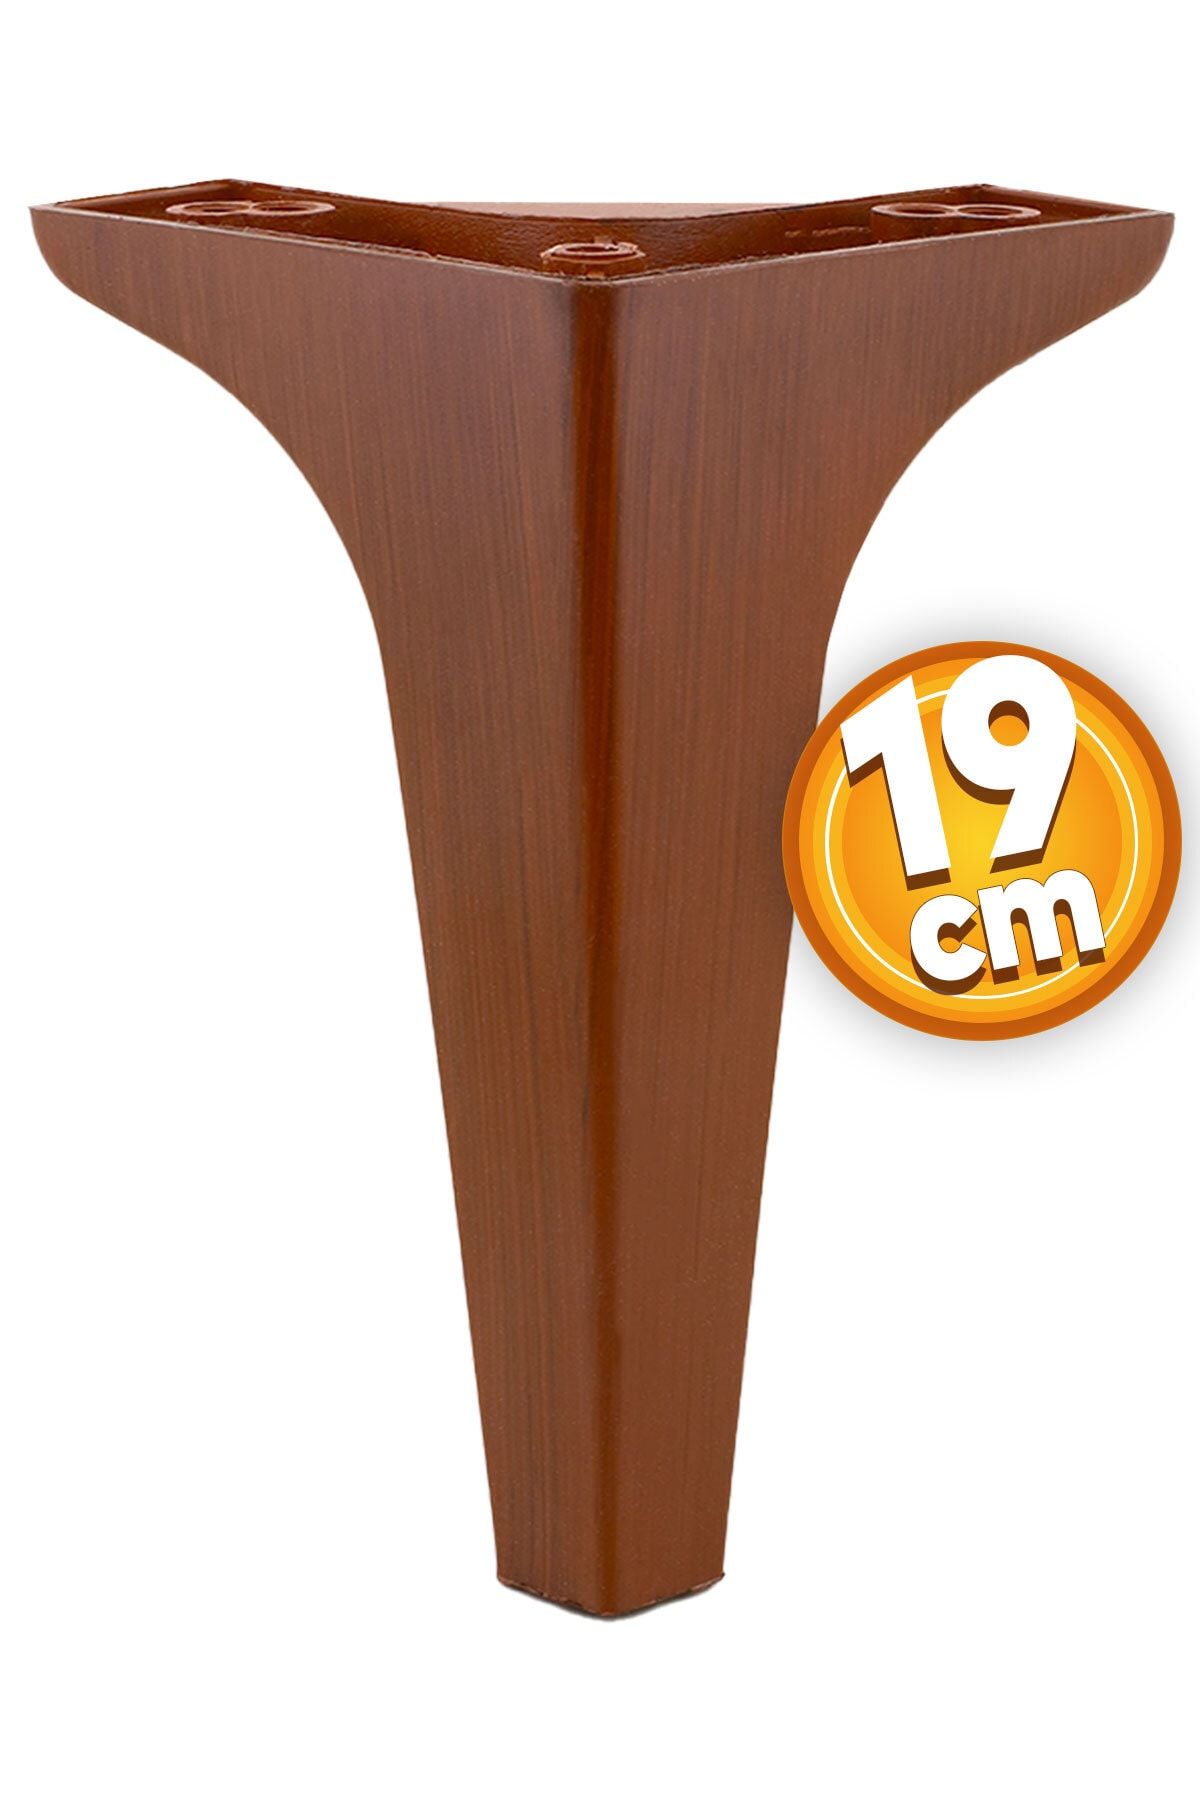 Badem10 Sedef Lüks Mobilya Kanepe Sehpa Tv Ünitesi Koltuk Ayağı 19 Cm Ahşap Desenli Kahverengi Baza Ayakları